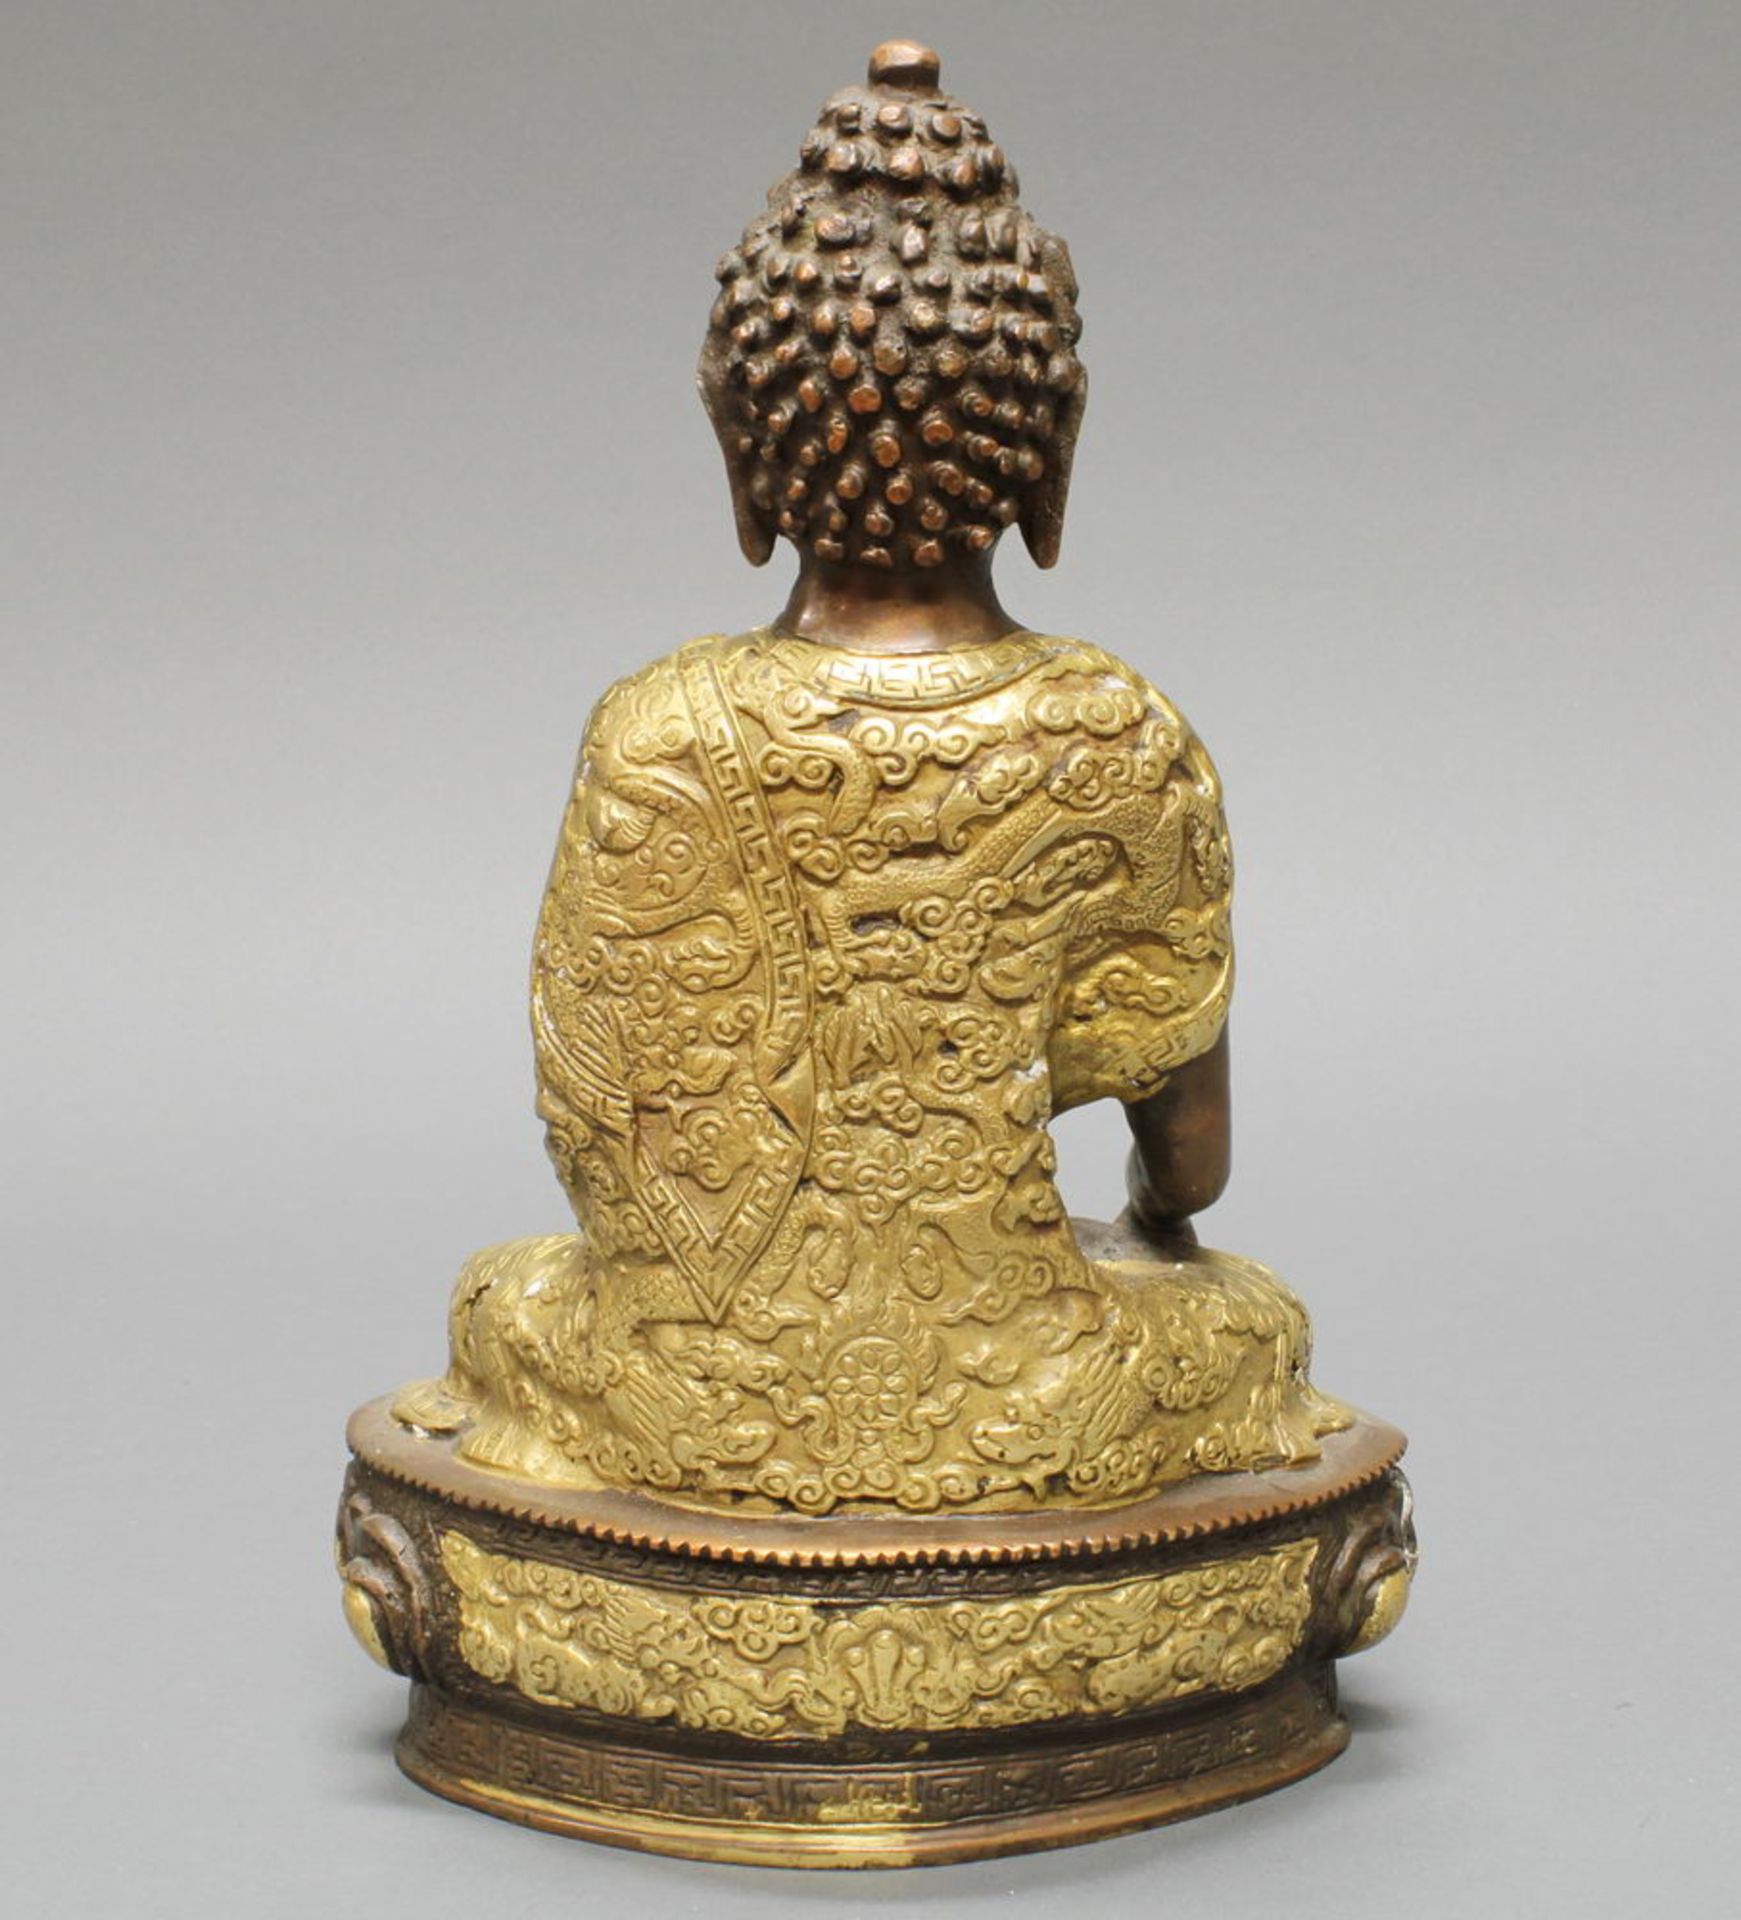 Sitzender Buddha, Nepal, 20. Jh., Messingbronze, teils vergoldet, die Hände in mudra, auf Lotossoc - Bild 2 aus 2